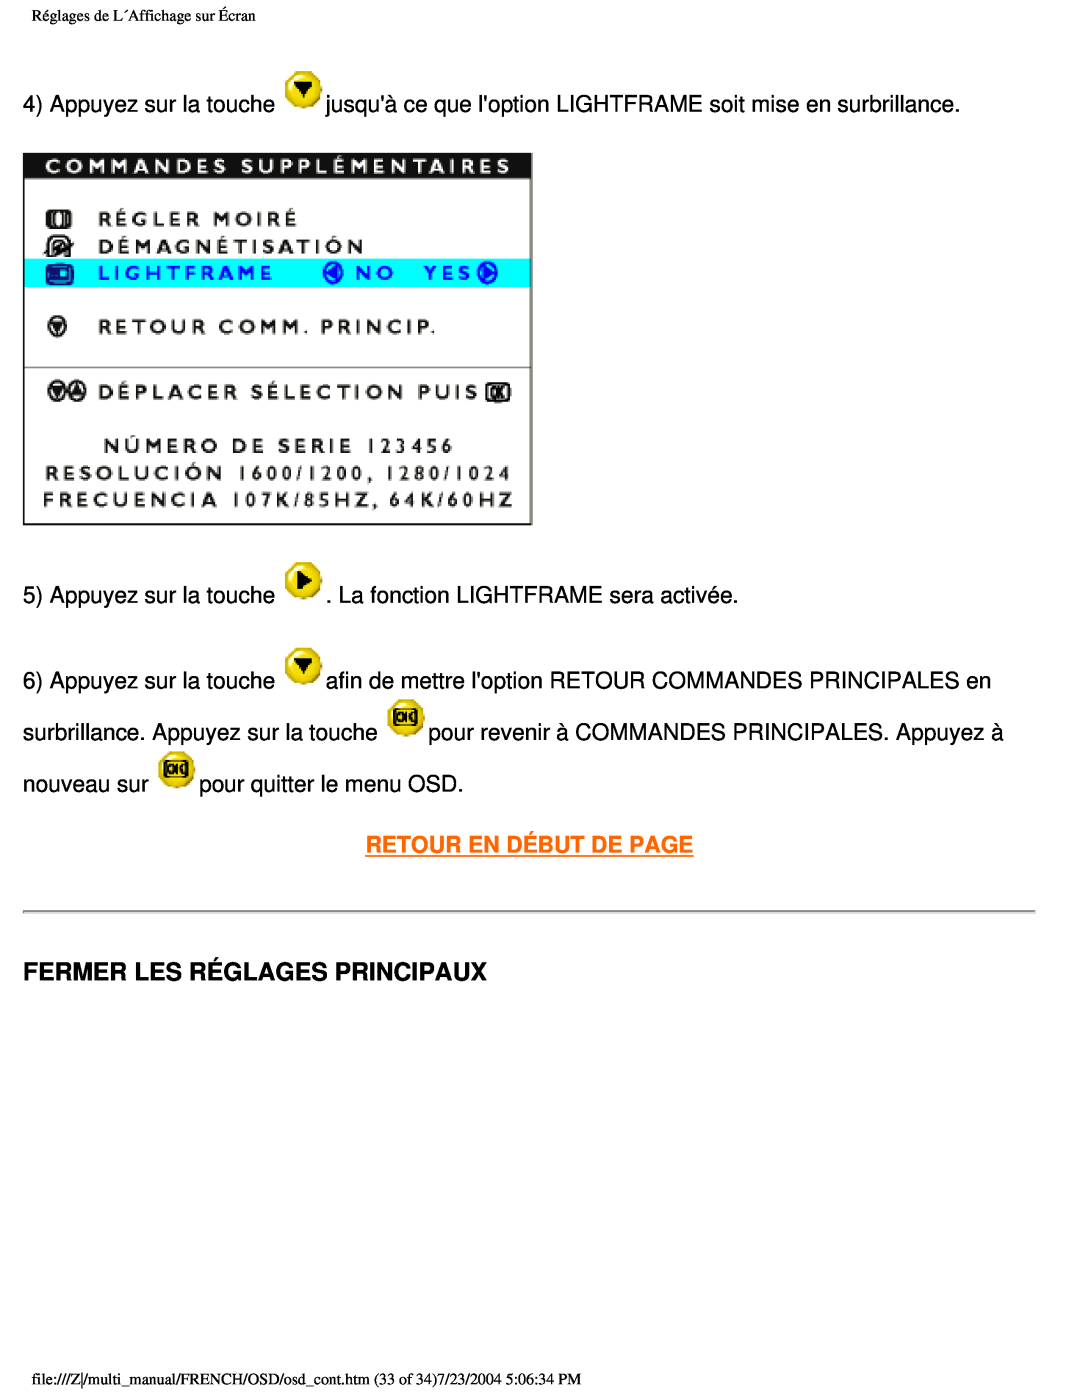 Philips 107B3 user manual Fermer Les Réglages Principaux, Retour En Début De Page 